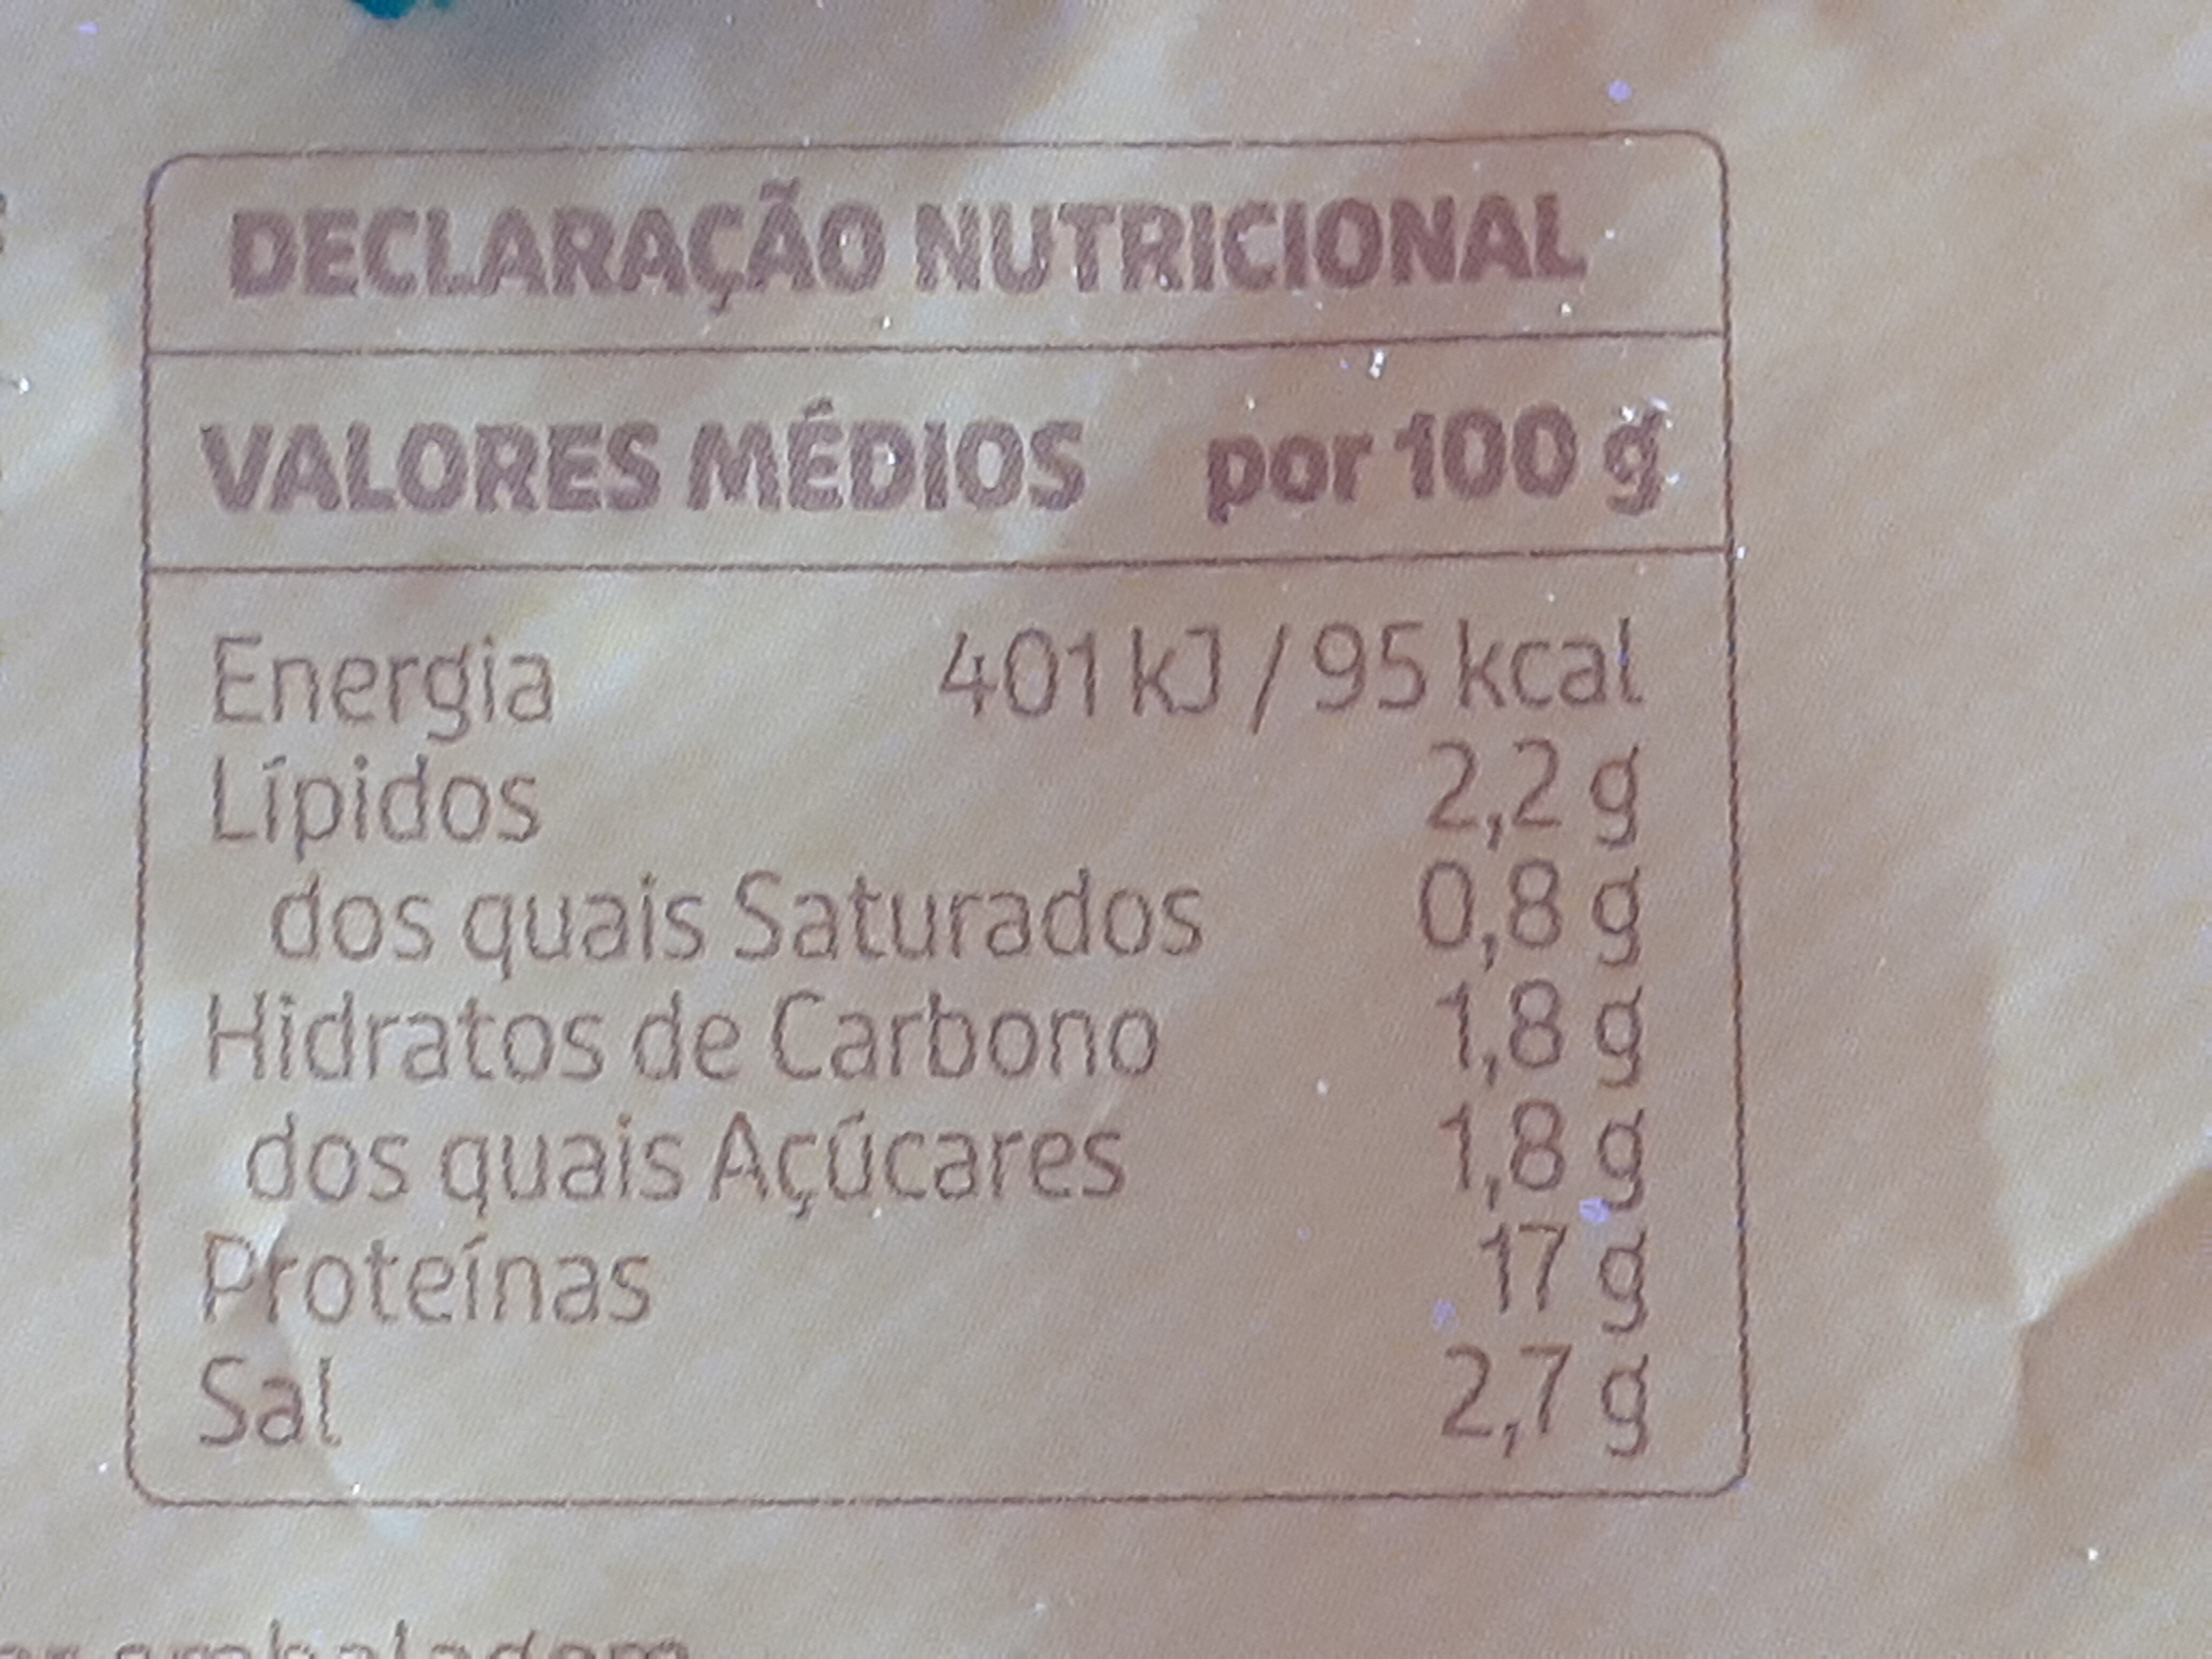 Fiambre da Perna Extra Fatias Finíssimas - Nutrition facts - pt